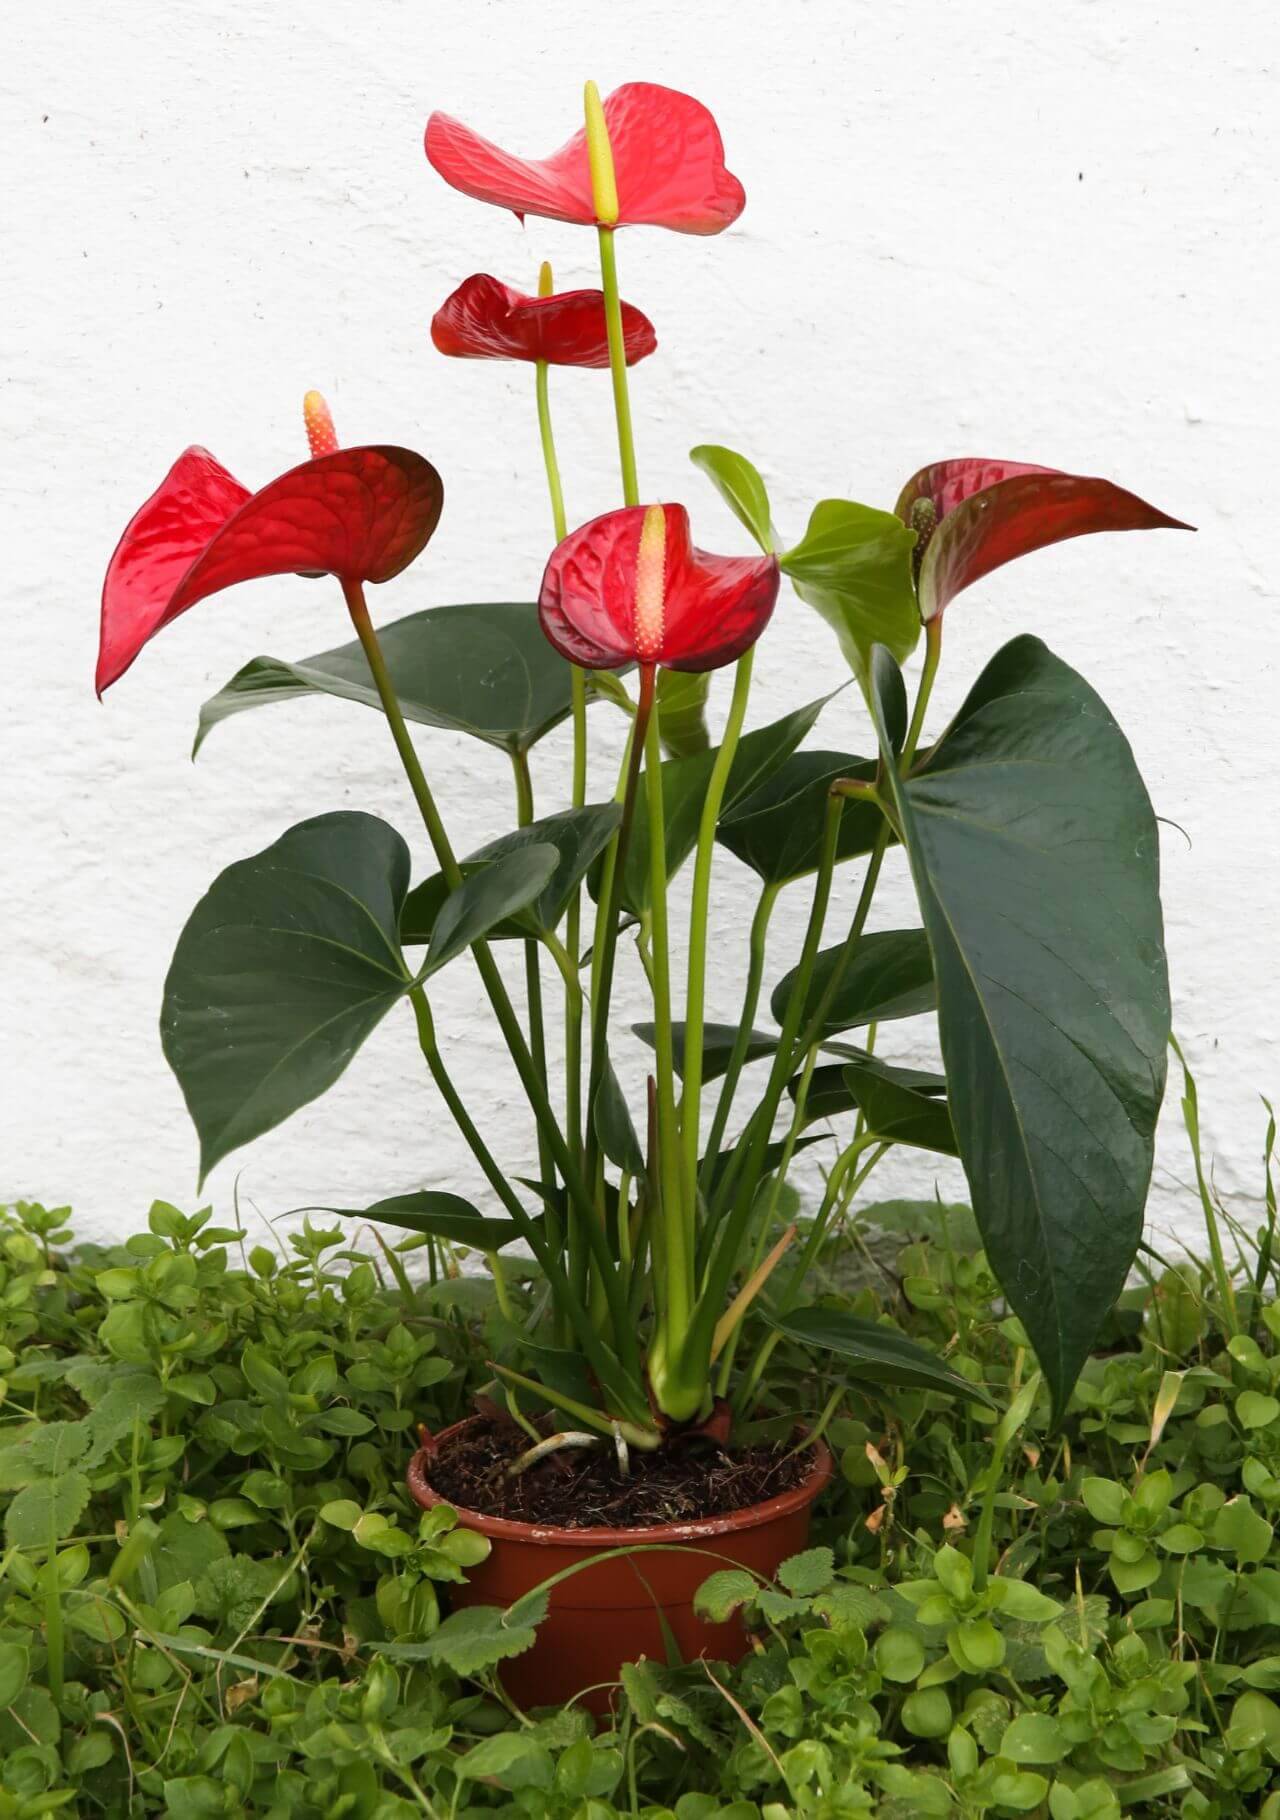 Plantas con flores rojas: anturio.